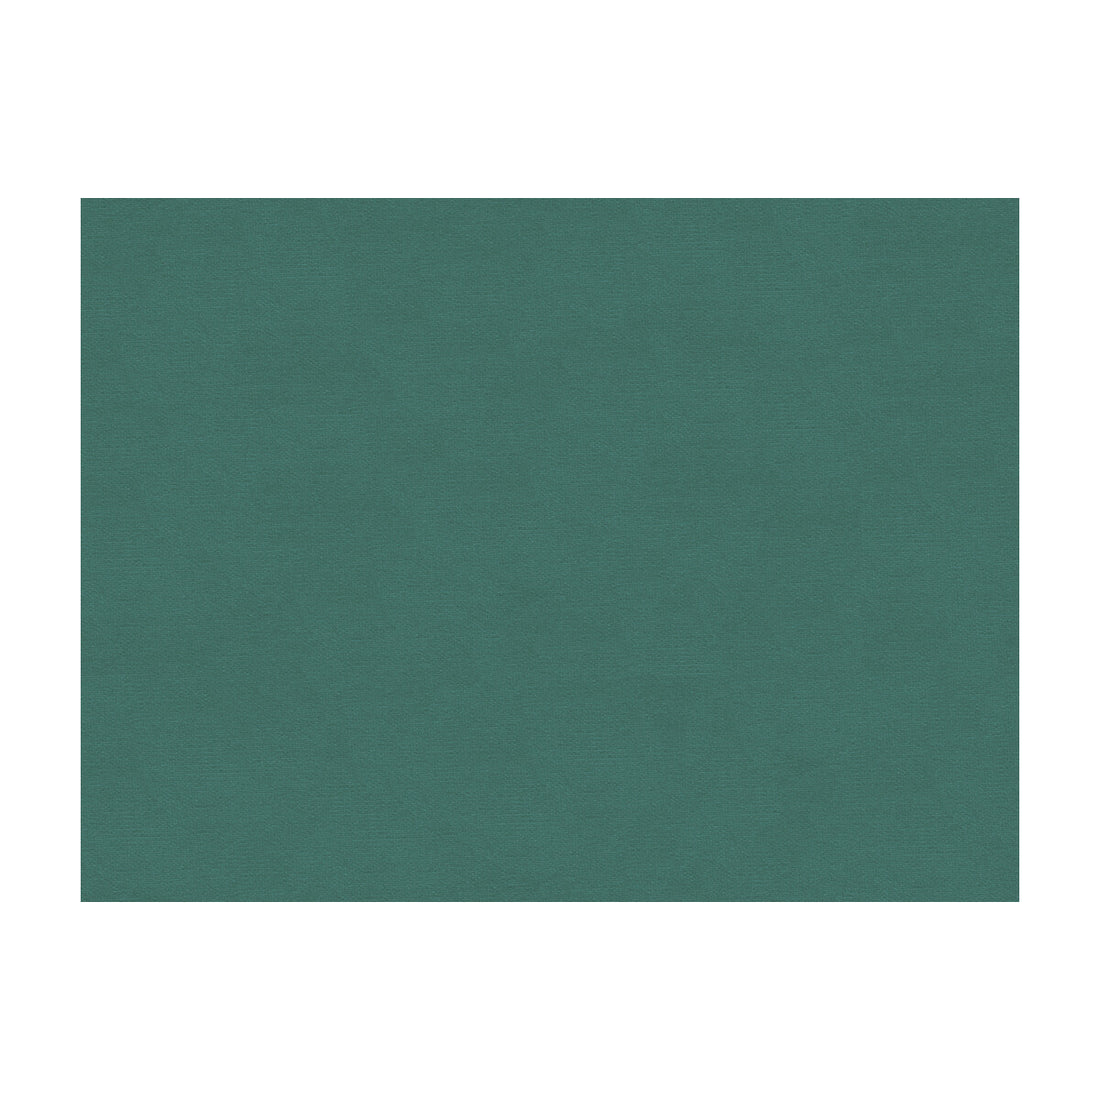 Lubeck Cotton Velvet fabric in cadet color - pattern BR-89779.246.0 - by Brunschwig &amp; Fils